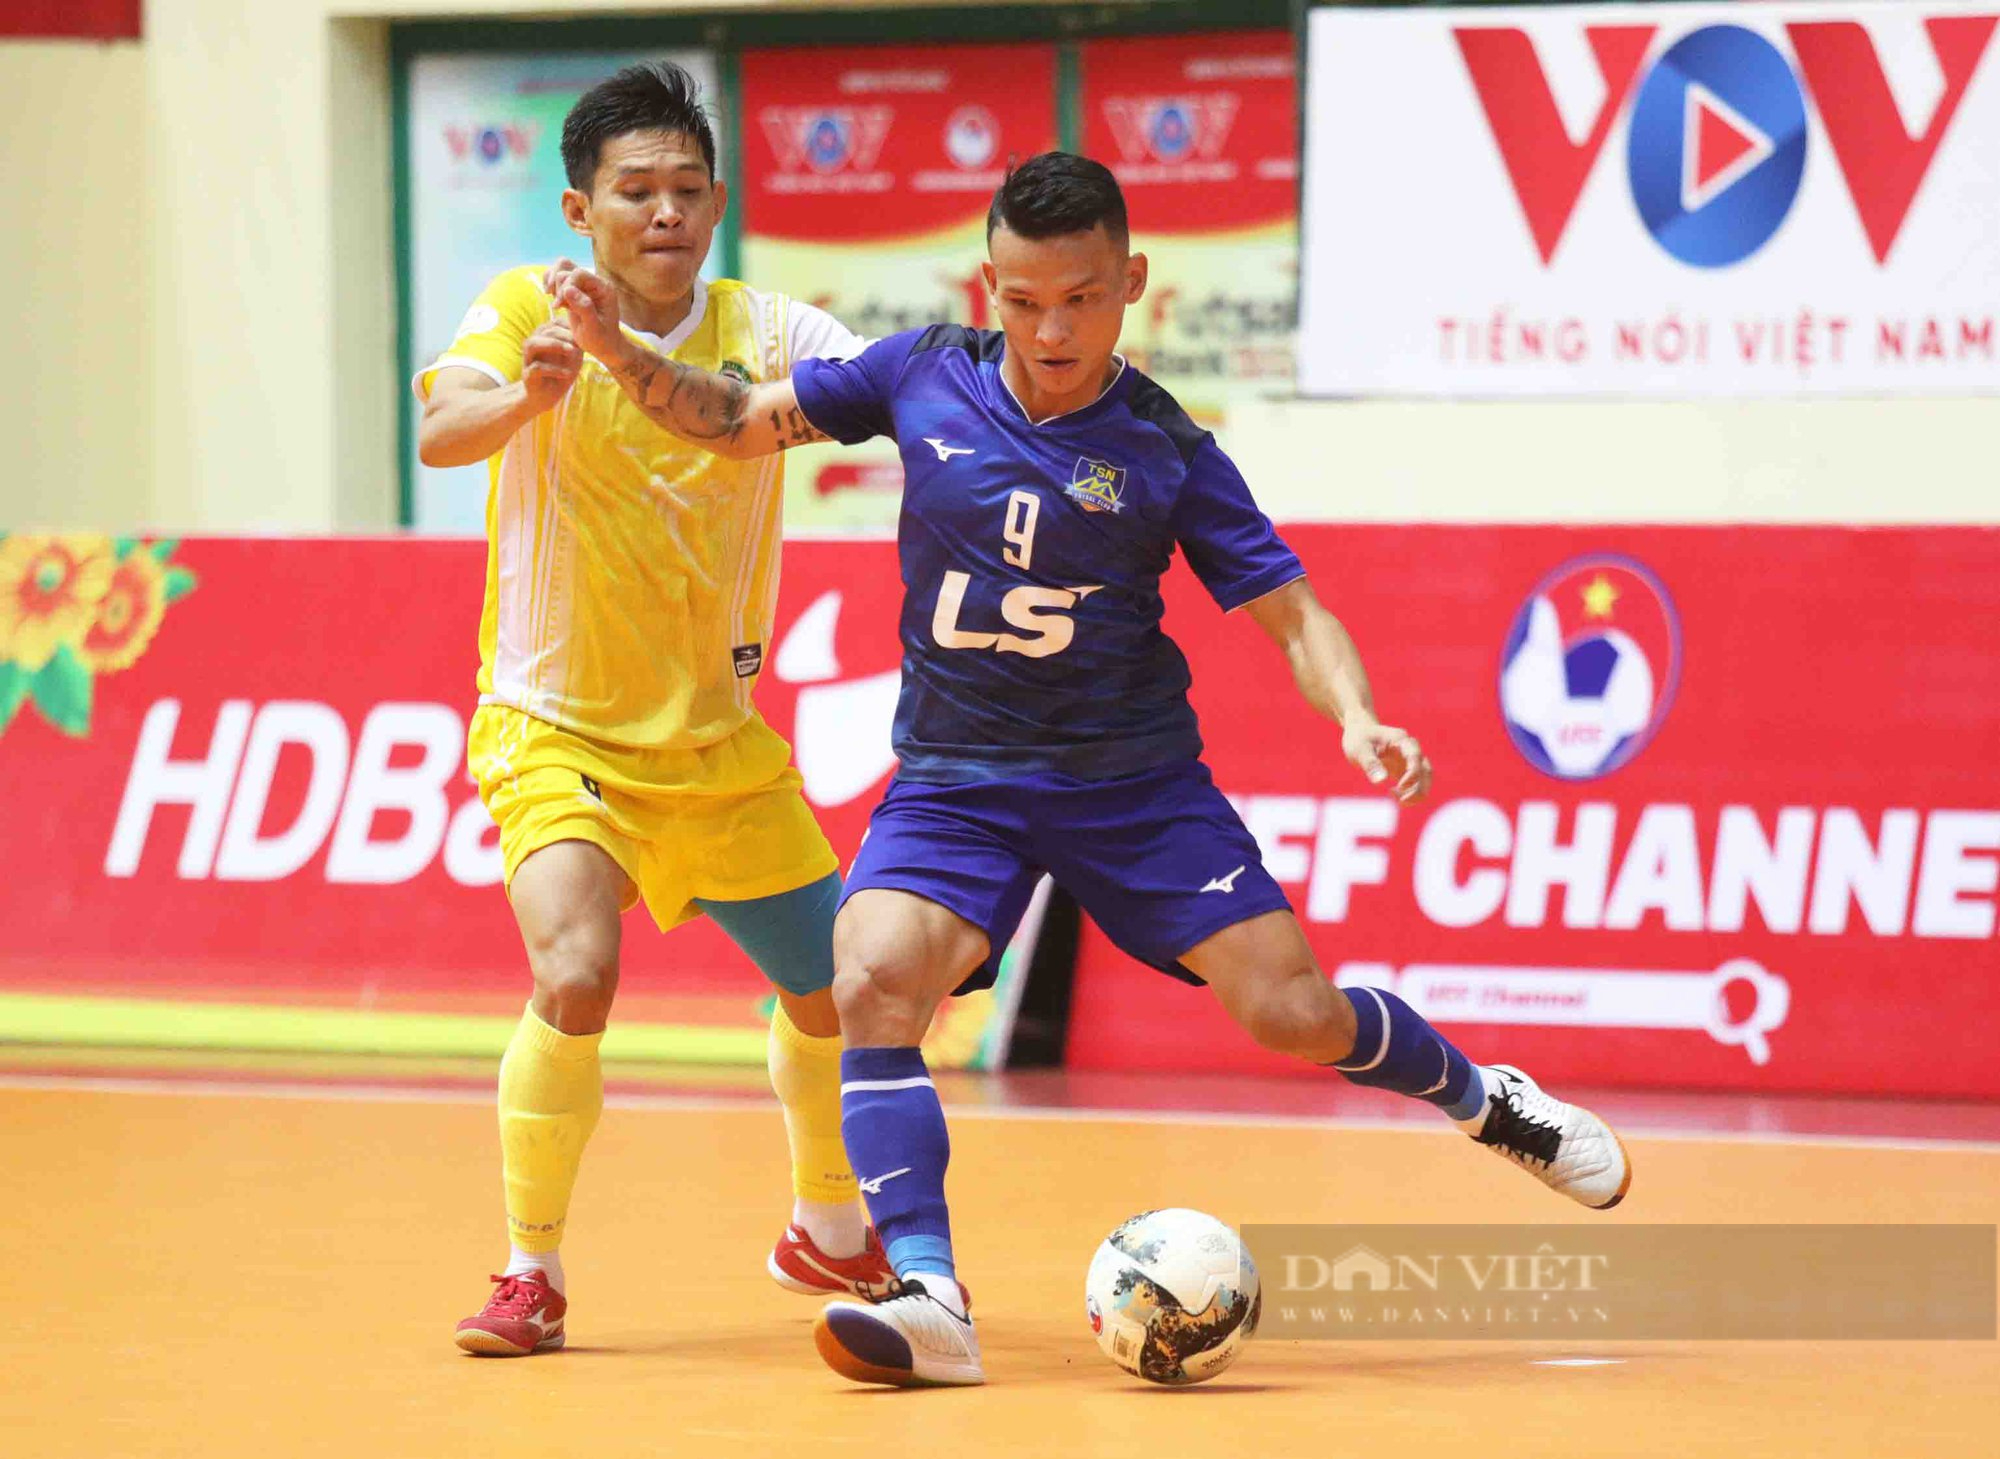 Thắng Sài Gòn FC, Thái Sơn Nam níu kéo cơ hội vô địch - Ảnh 2.